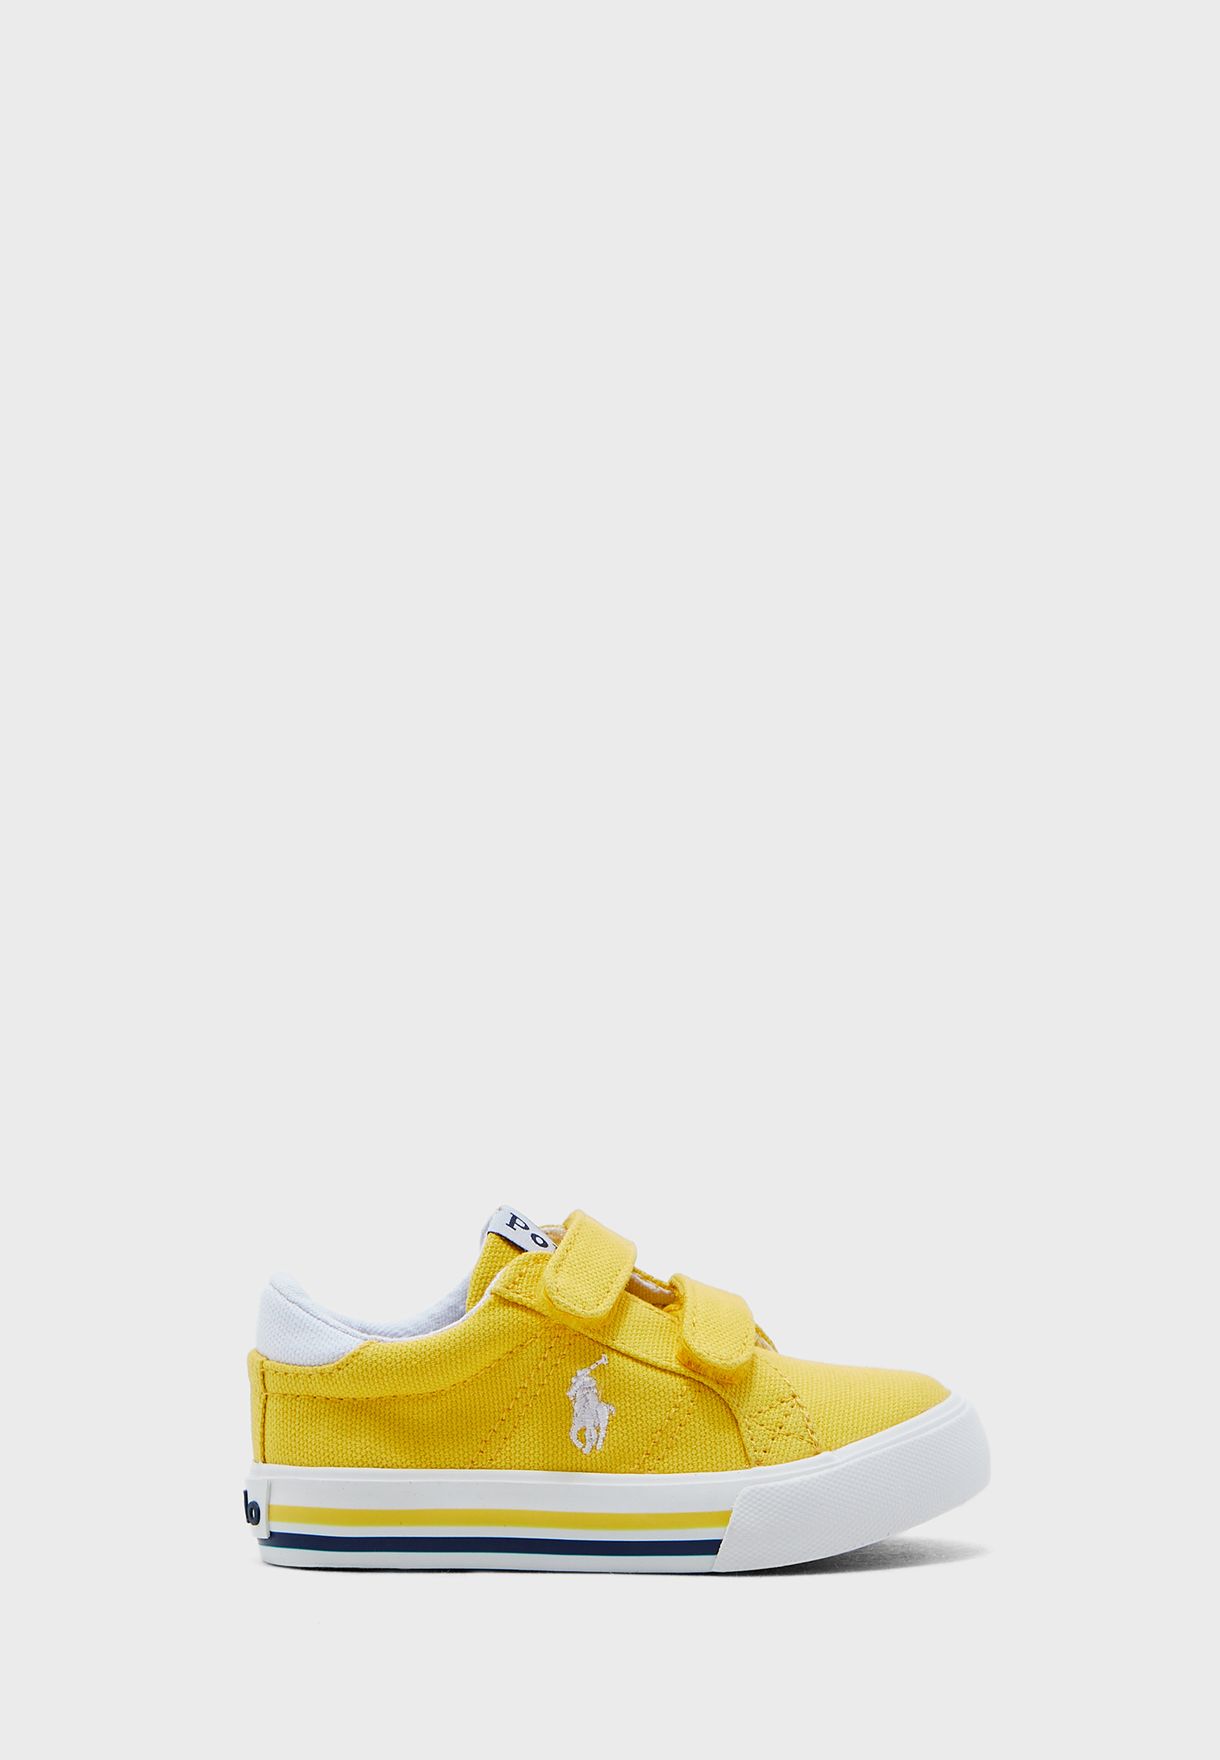 ralph lauren yellow shoes